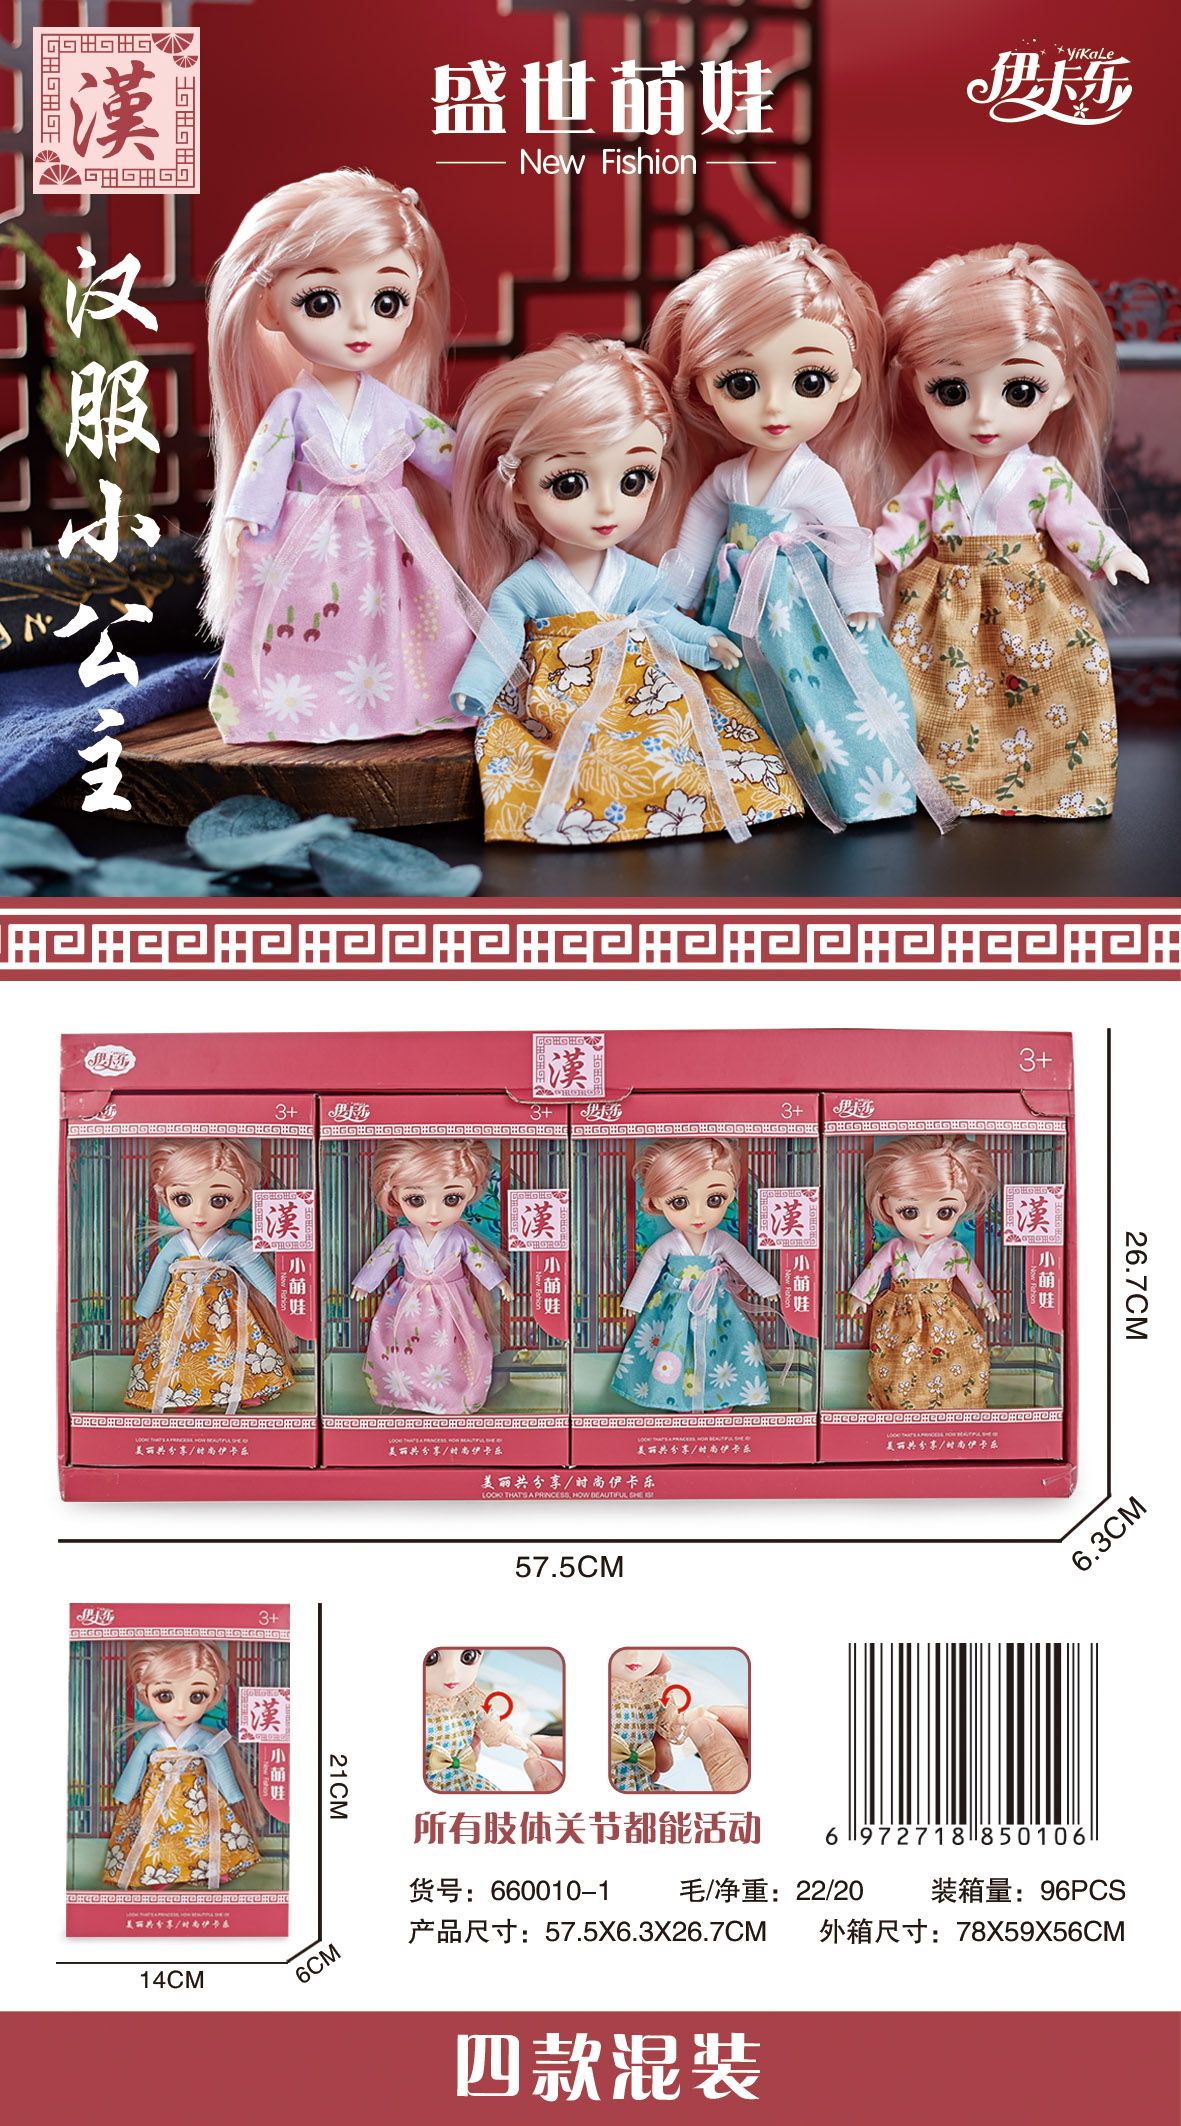 女孩换装汉服系列可爱小公主娃娃玩具公仔厂家直销